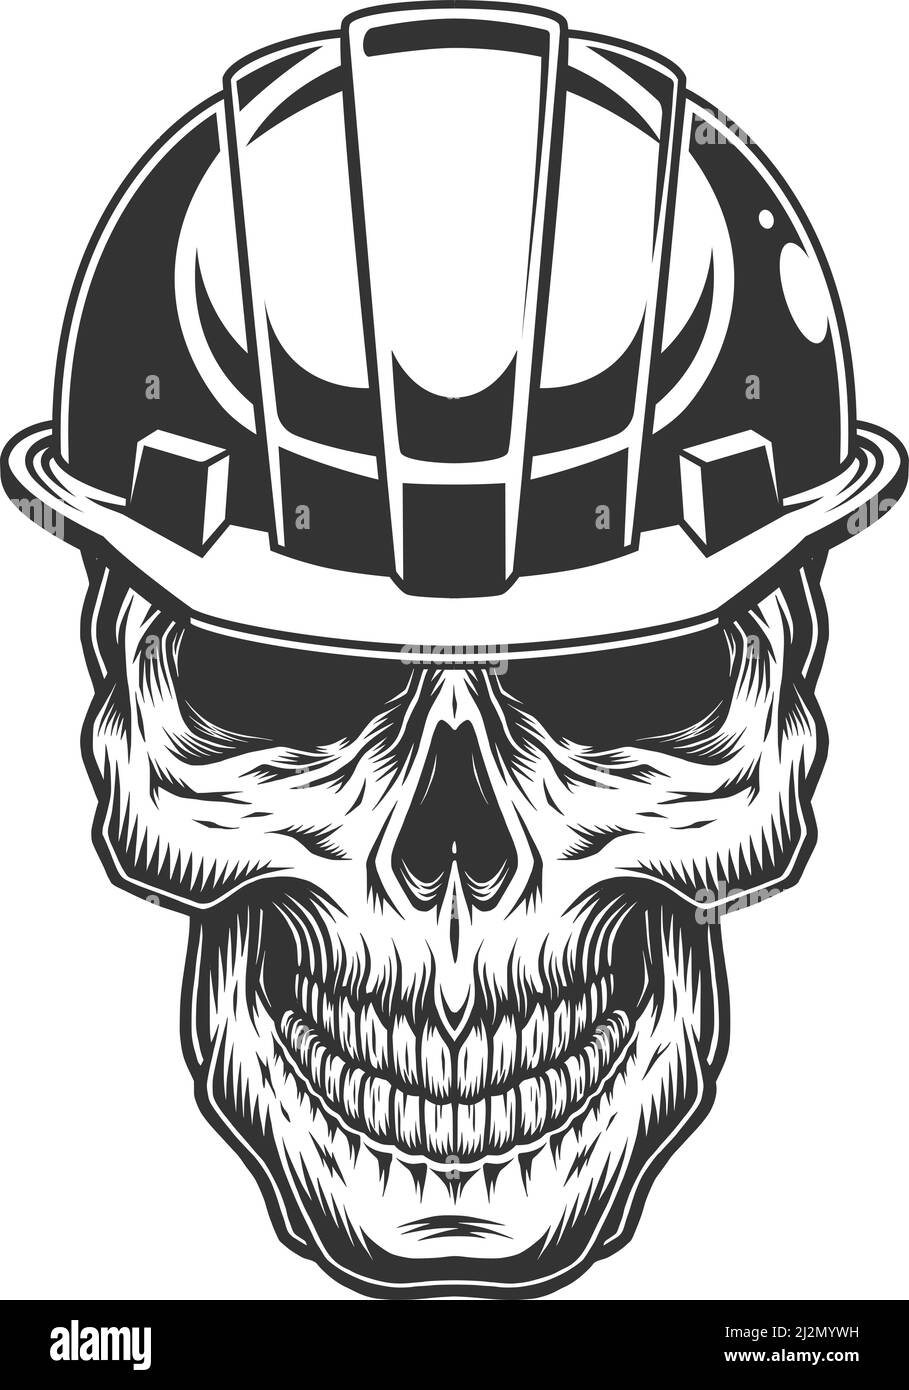 Skull in the miner helmet. Vector vintage illustration Stock Vector ...